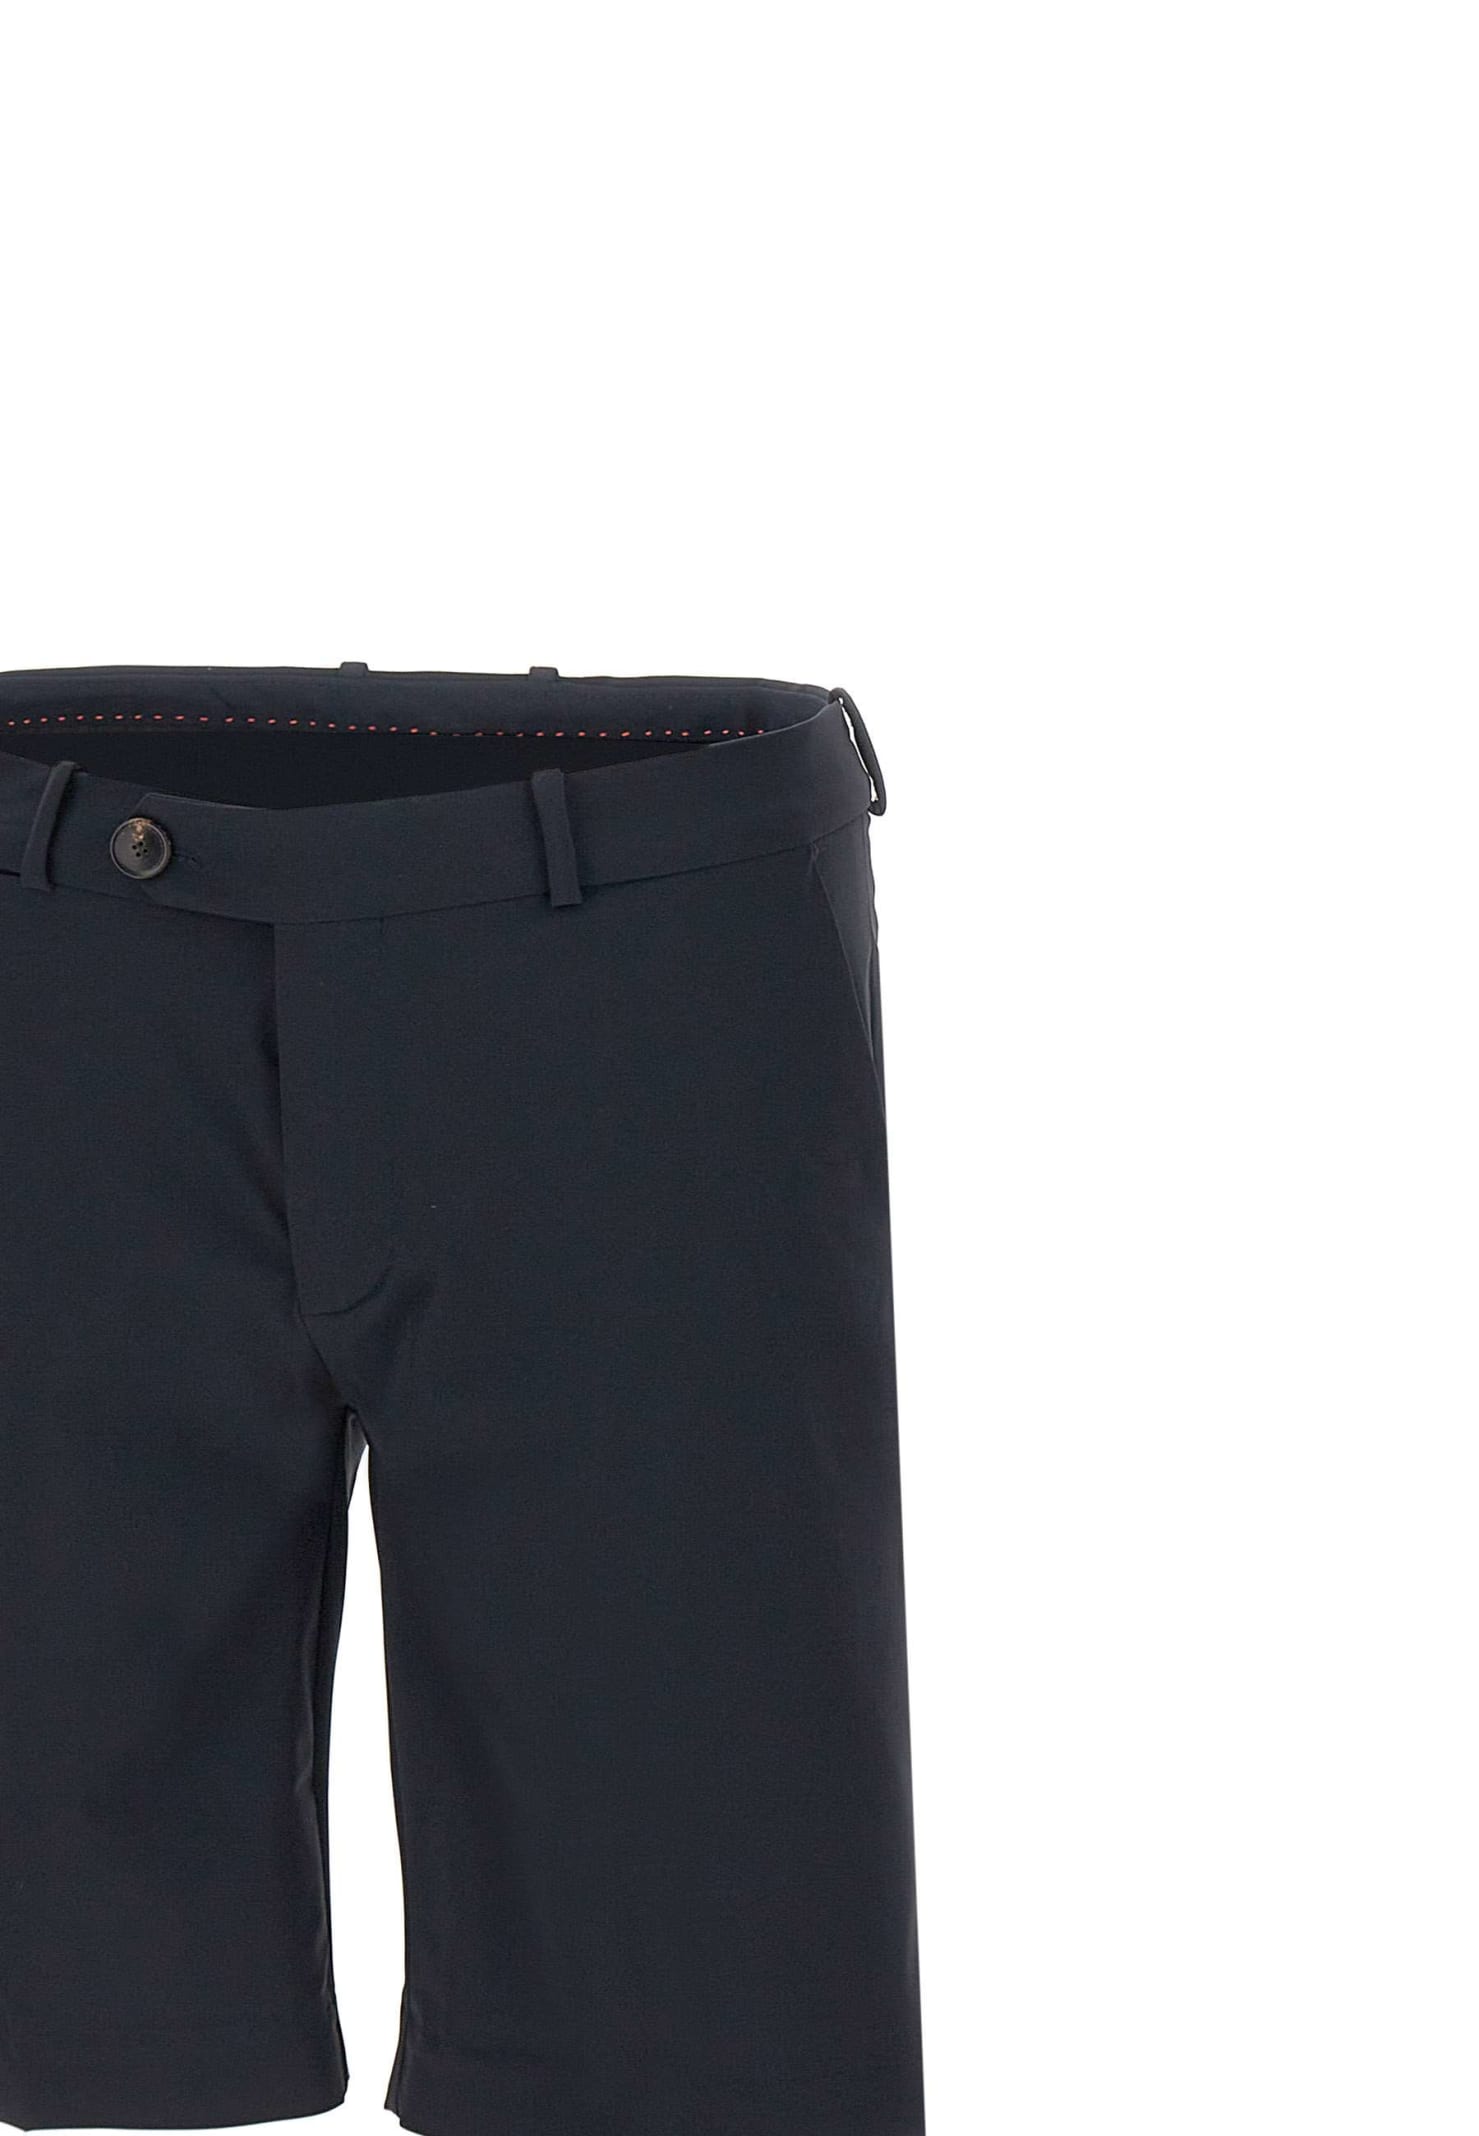 Shop Rrd - Roberto Ricci Design Revo Chino Shorts In Blue Black